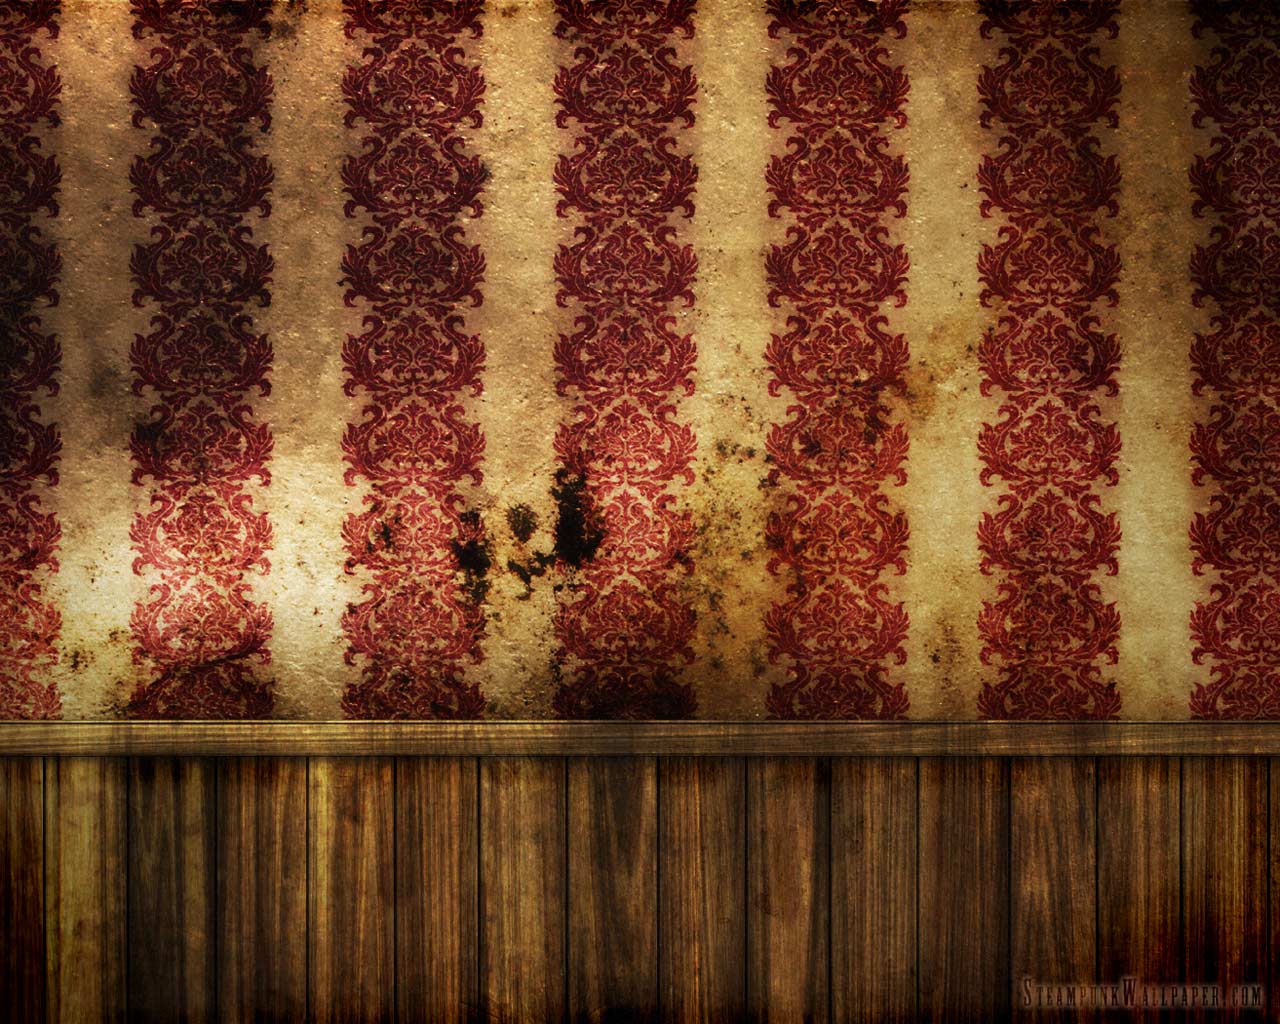 Steampunk Wallpaper | 1280x1024 | ID:13132